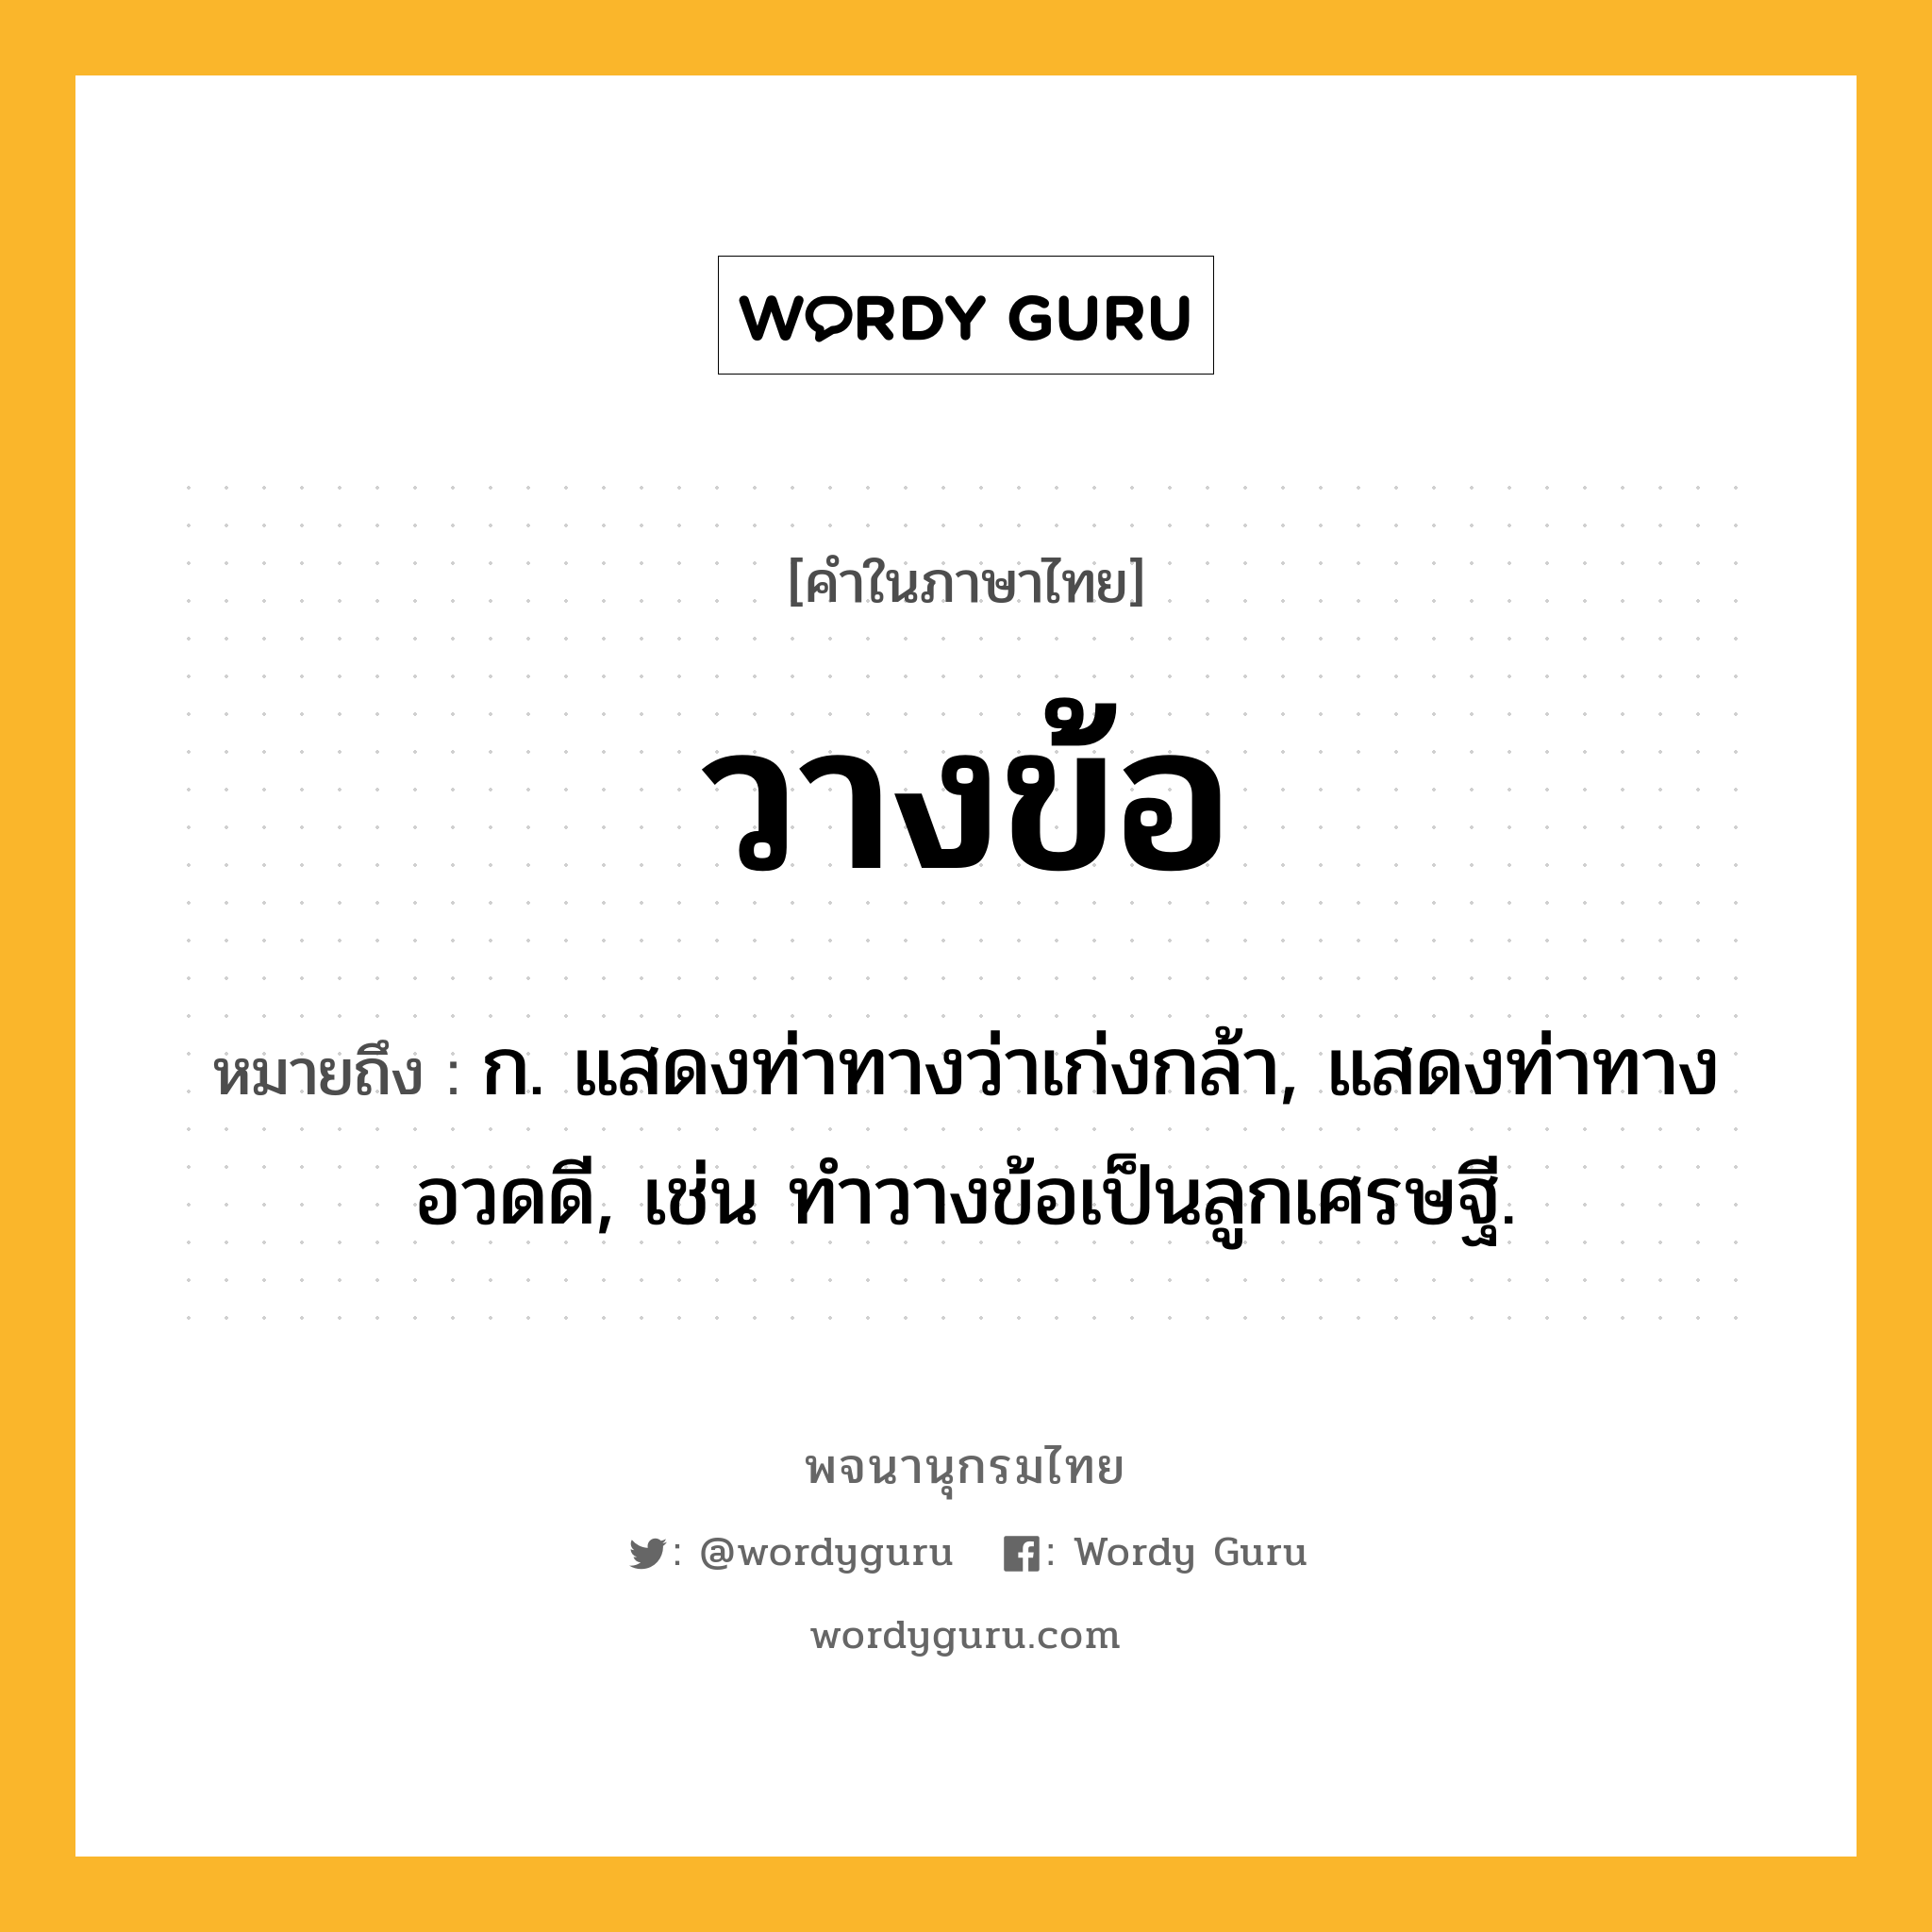 วางข้อ ความหมาย หมายถึงอะไร?, คำในภาษาไทย วางข้อ หมายถึง ก. แสดงท่าทางว่าเก่งกล้า, แสดงท่าทางอวดดี, เช่น ทำวางข้อเป็นลูกเศรษฐี.